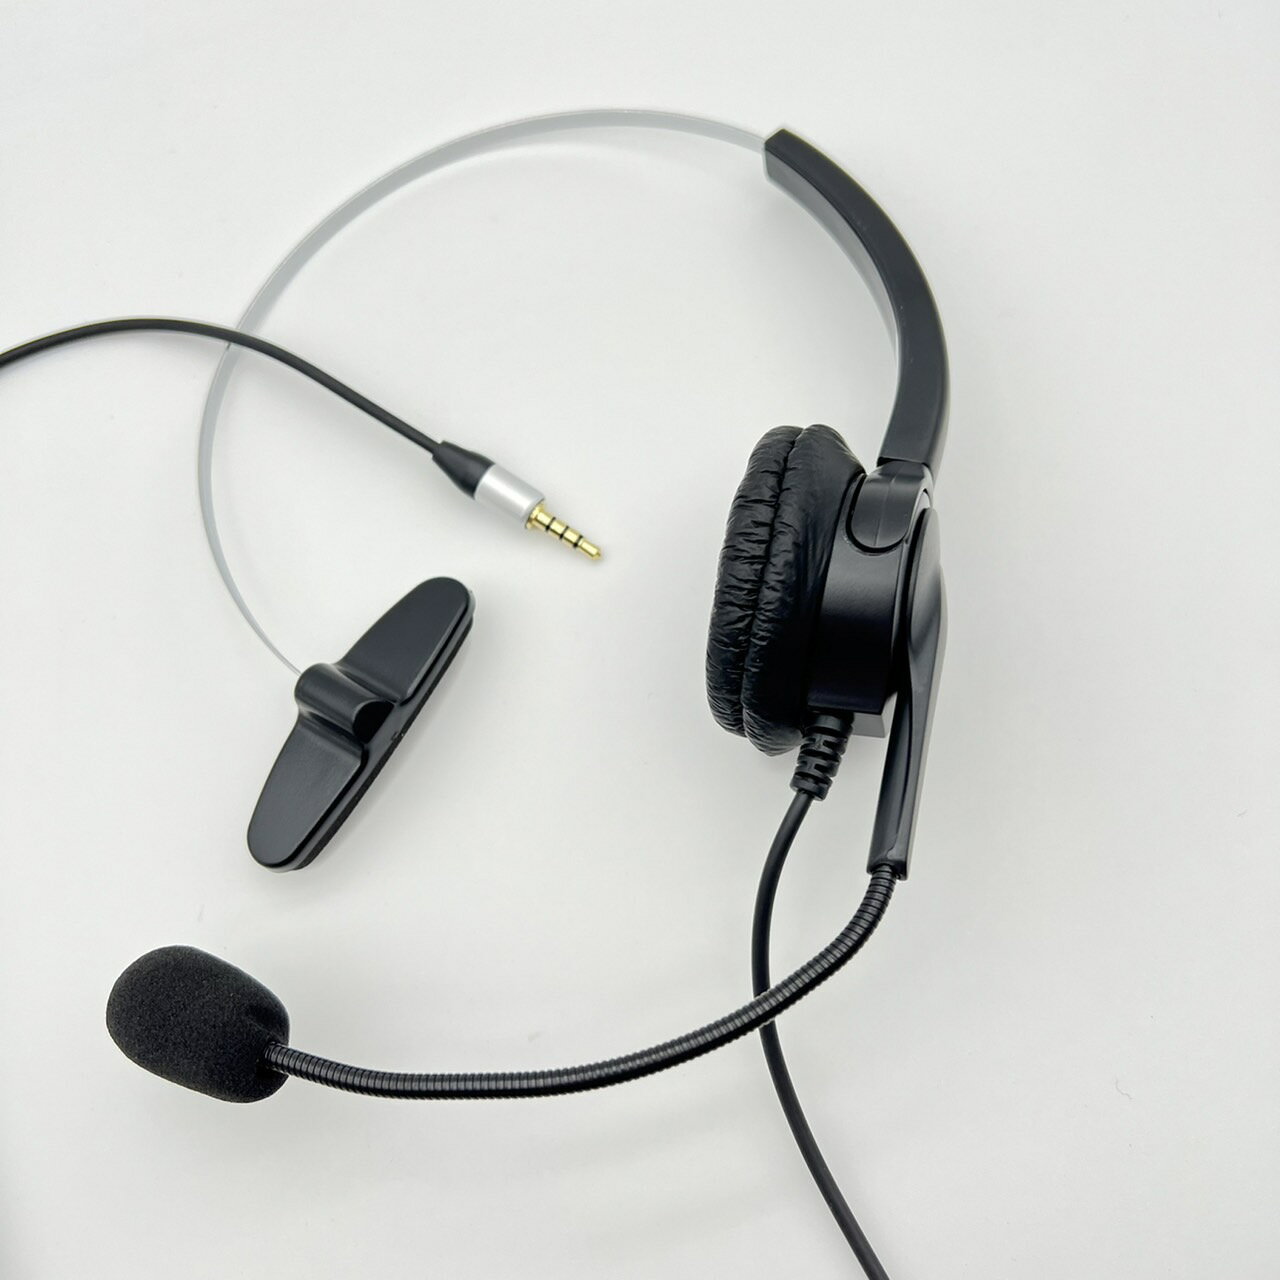 國際牌Panasonic KX-TGE613 單耳耳機麥克風 2.5mm耳機孔